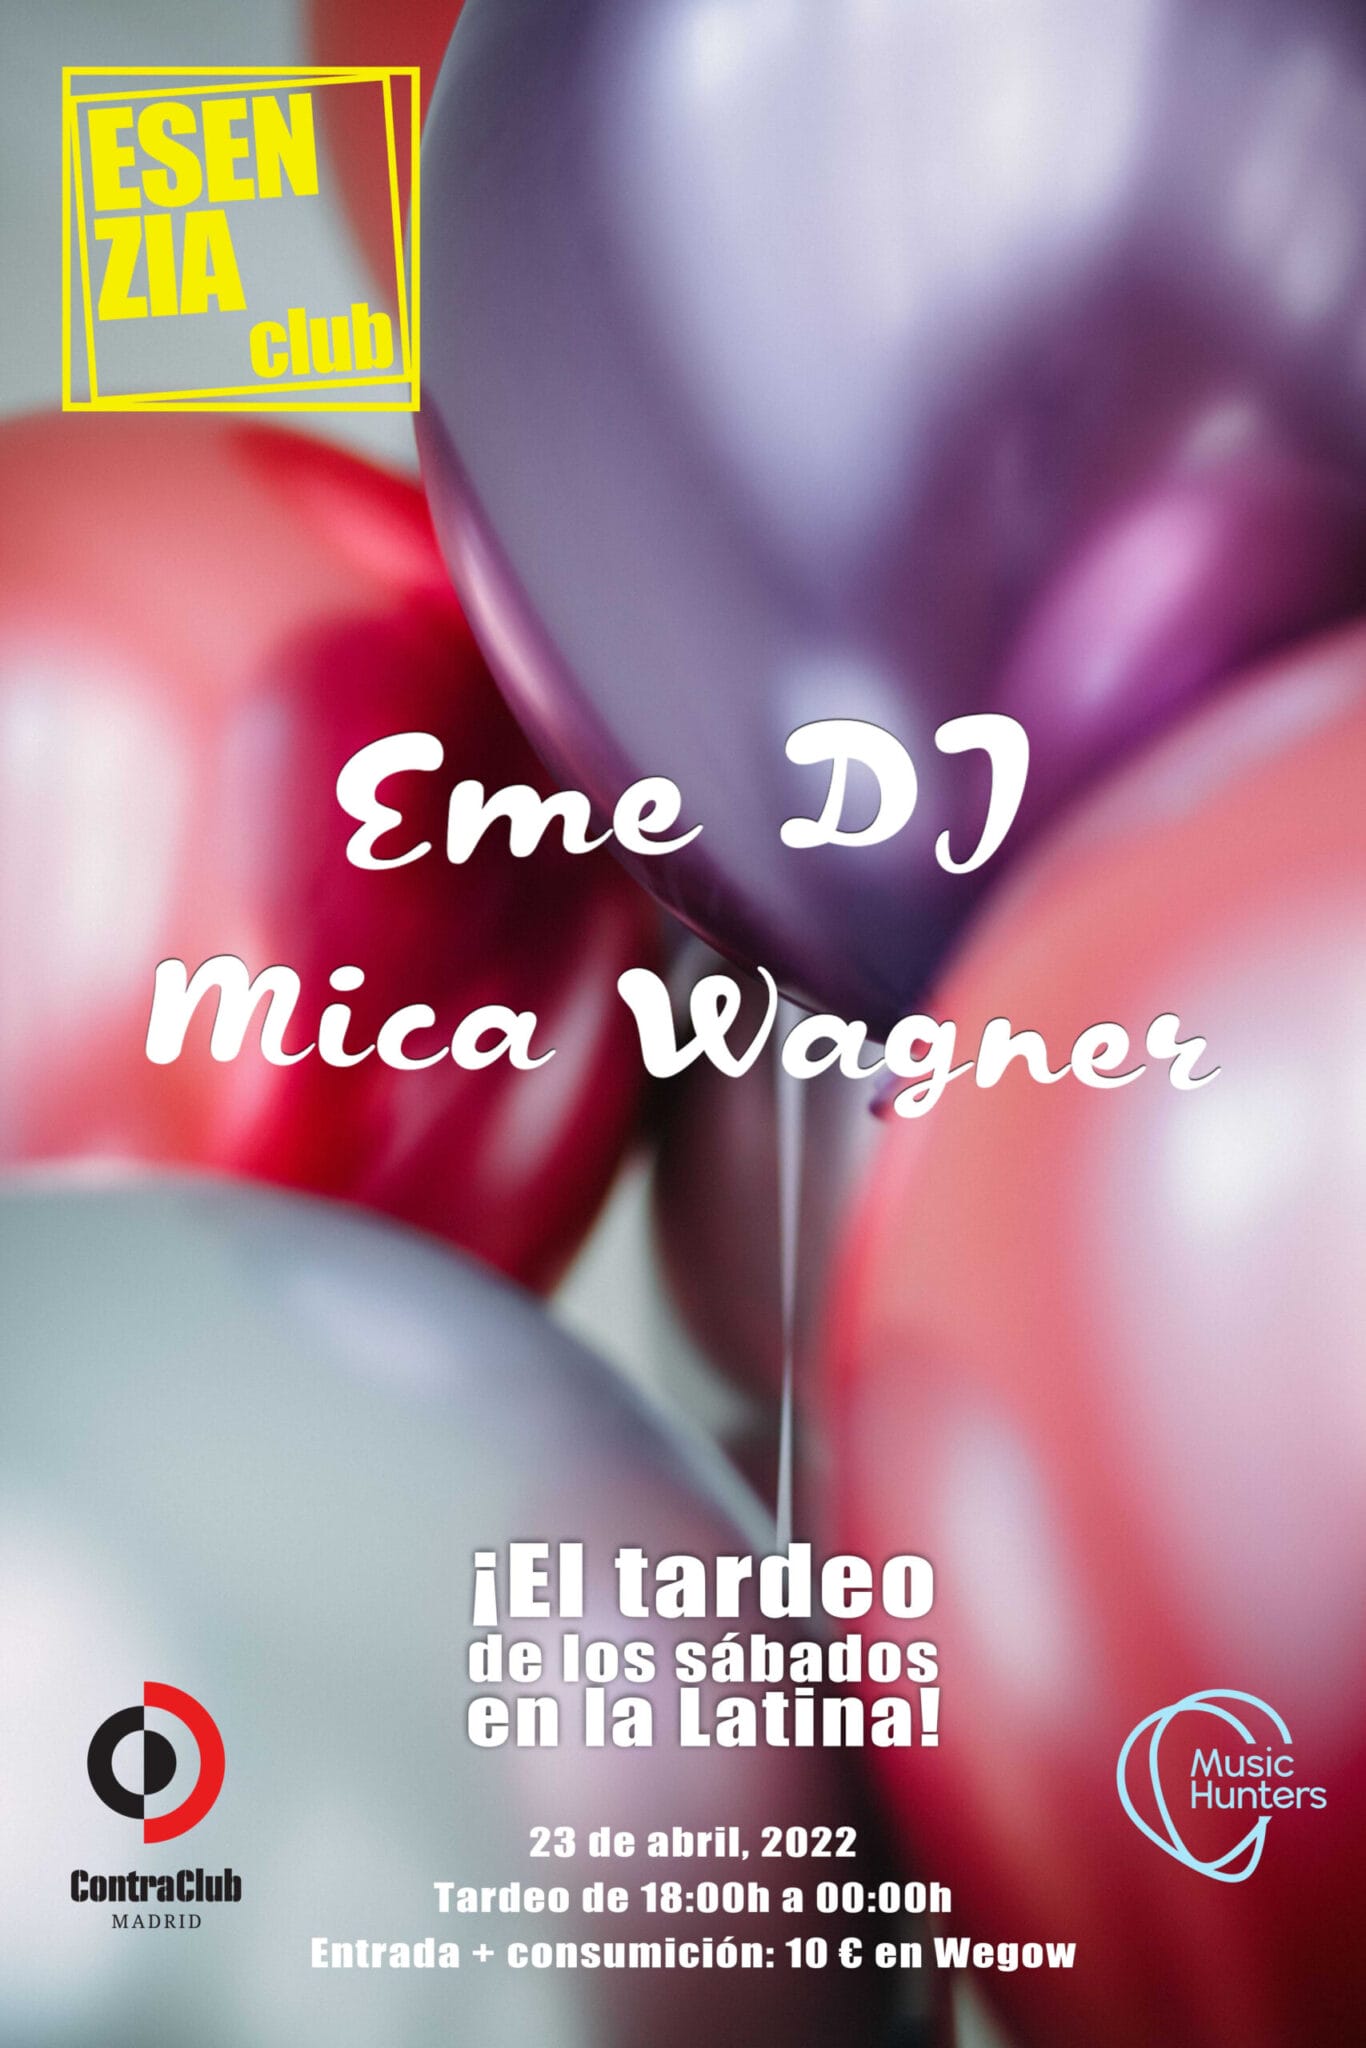 Esenzia Club, con Eme DJ y Mica Wagner Contraclub. Calle Bailén, 16 ( Latina / ) Madrid 23 de marzo, 18:00h - 00:00h. Entradas (10€ con consumición) en Wegow